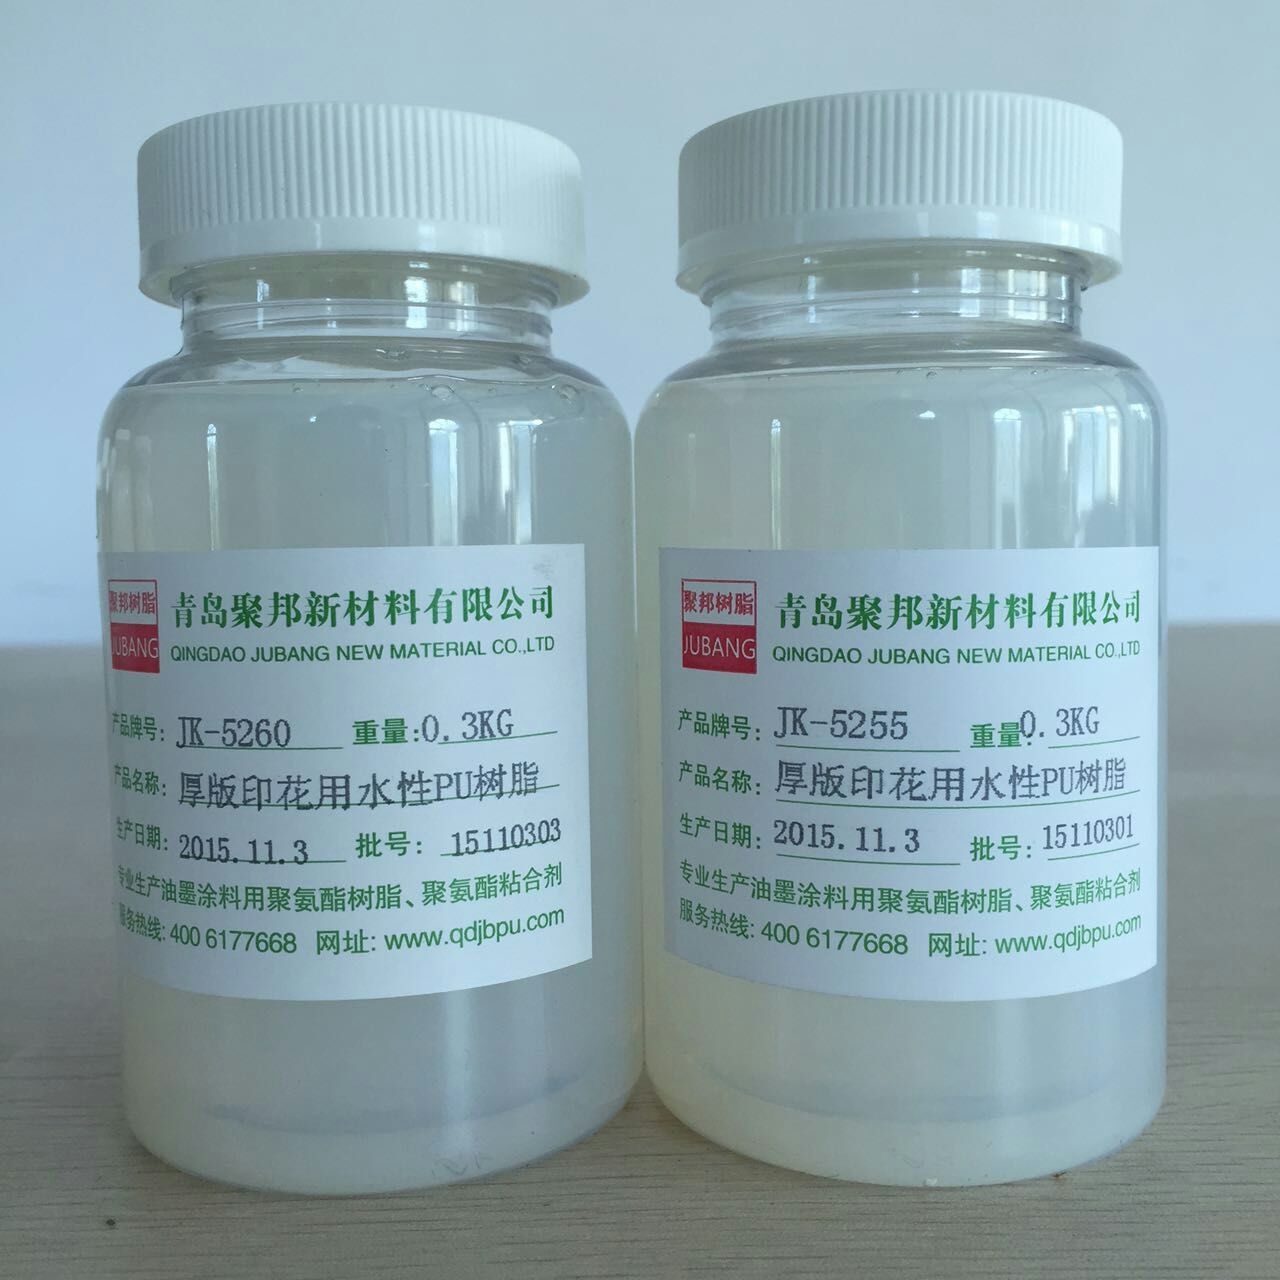 青岛市水性强力粘合剂厂家供应用于植绒胶|贴合的水性强力粘合剂  水性聚氨酯树脂   聚氨酯树脂供应商